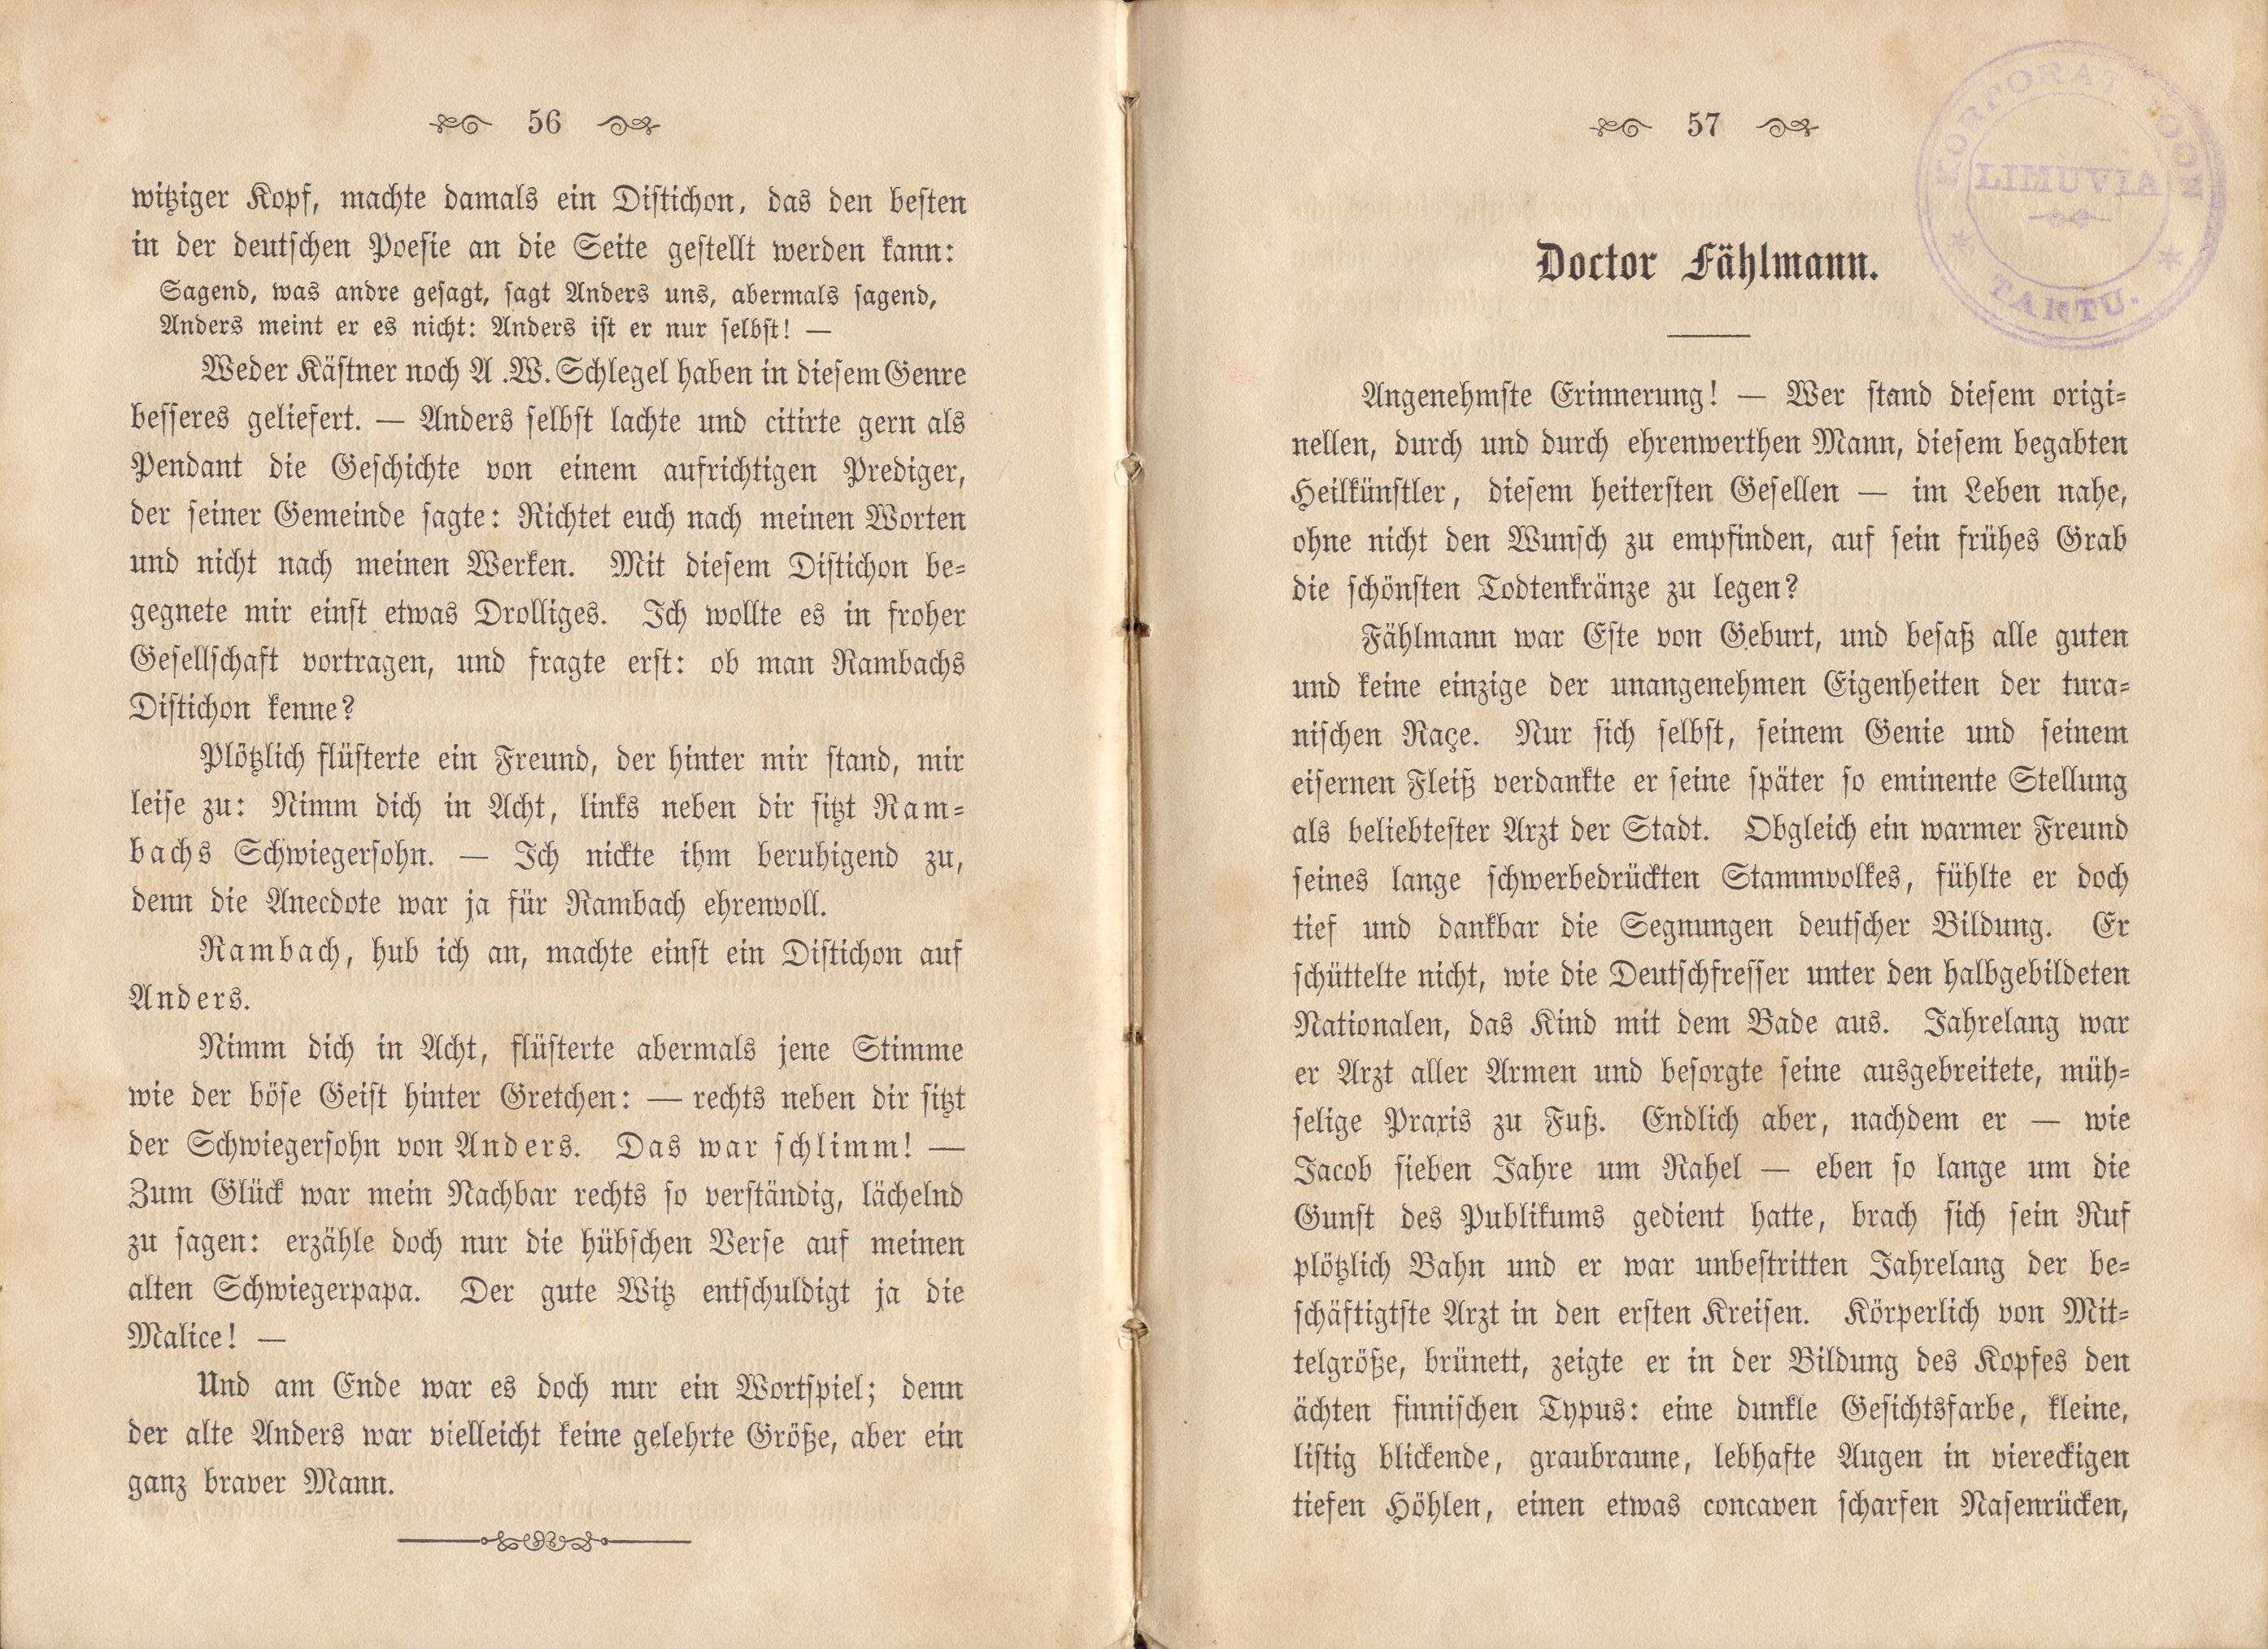 Dorpats Grössen und Typen (1868) | 31. (56-57) Основной текст